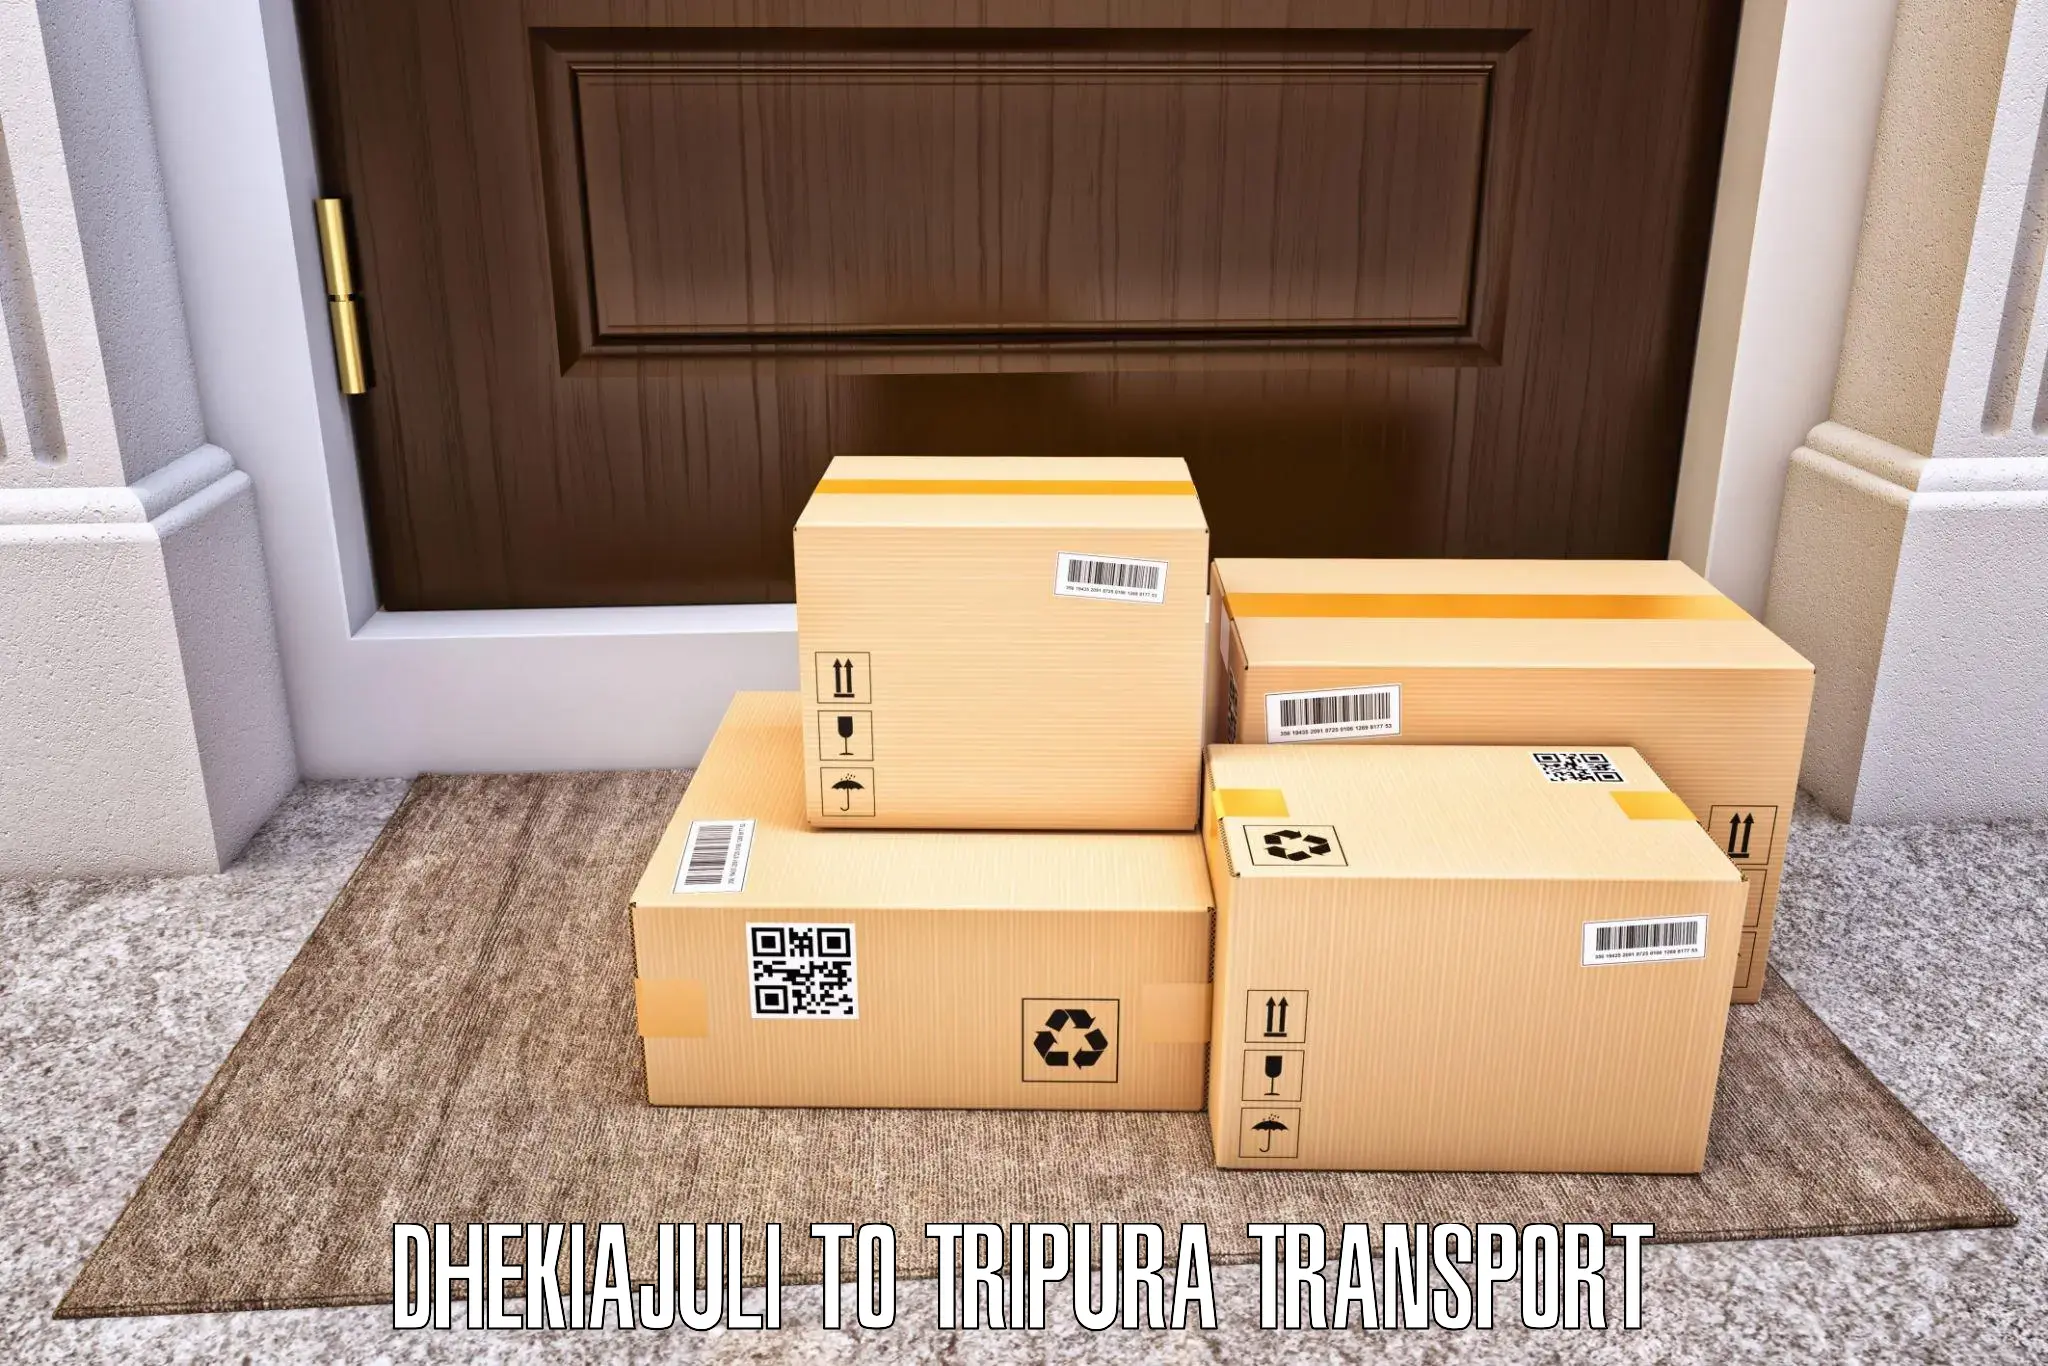 Interstate goods transport Dhekiajuli to Khowai